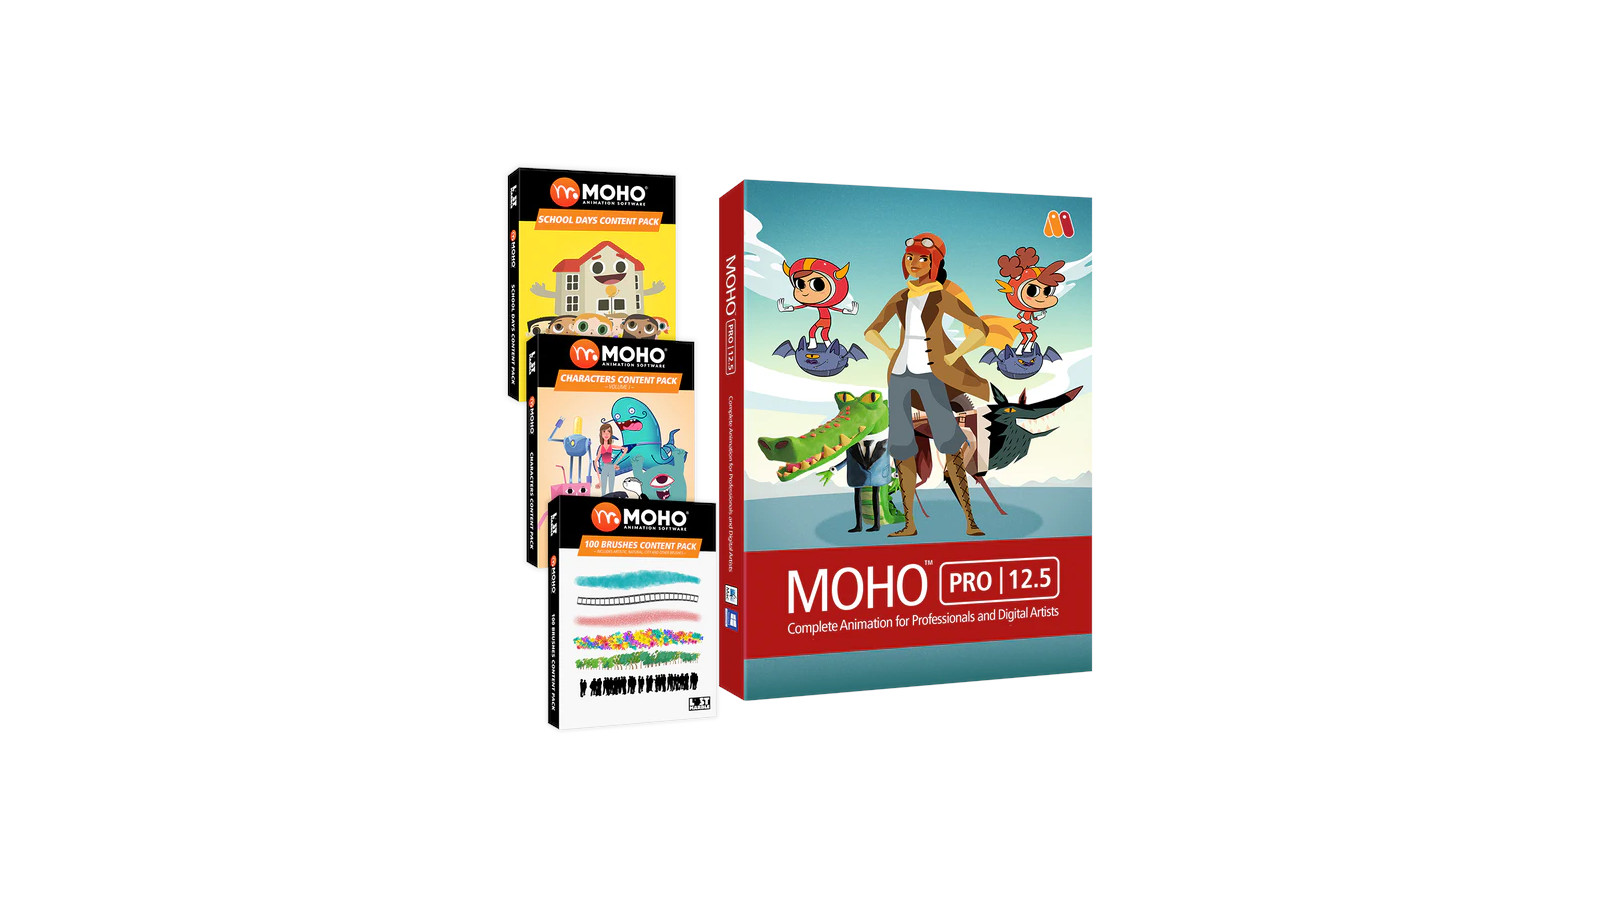 MOHO PRO 12.5 BUNDLE PC/MAC CD Key, 386.84$